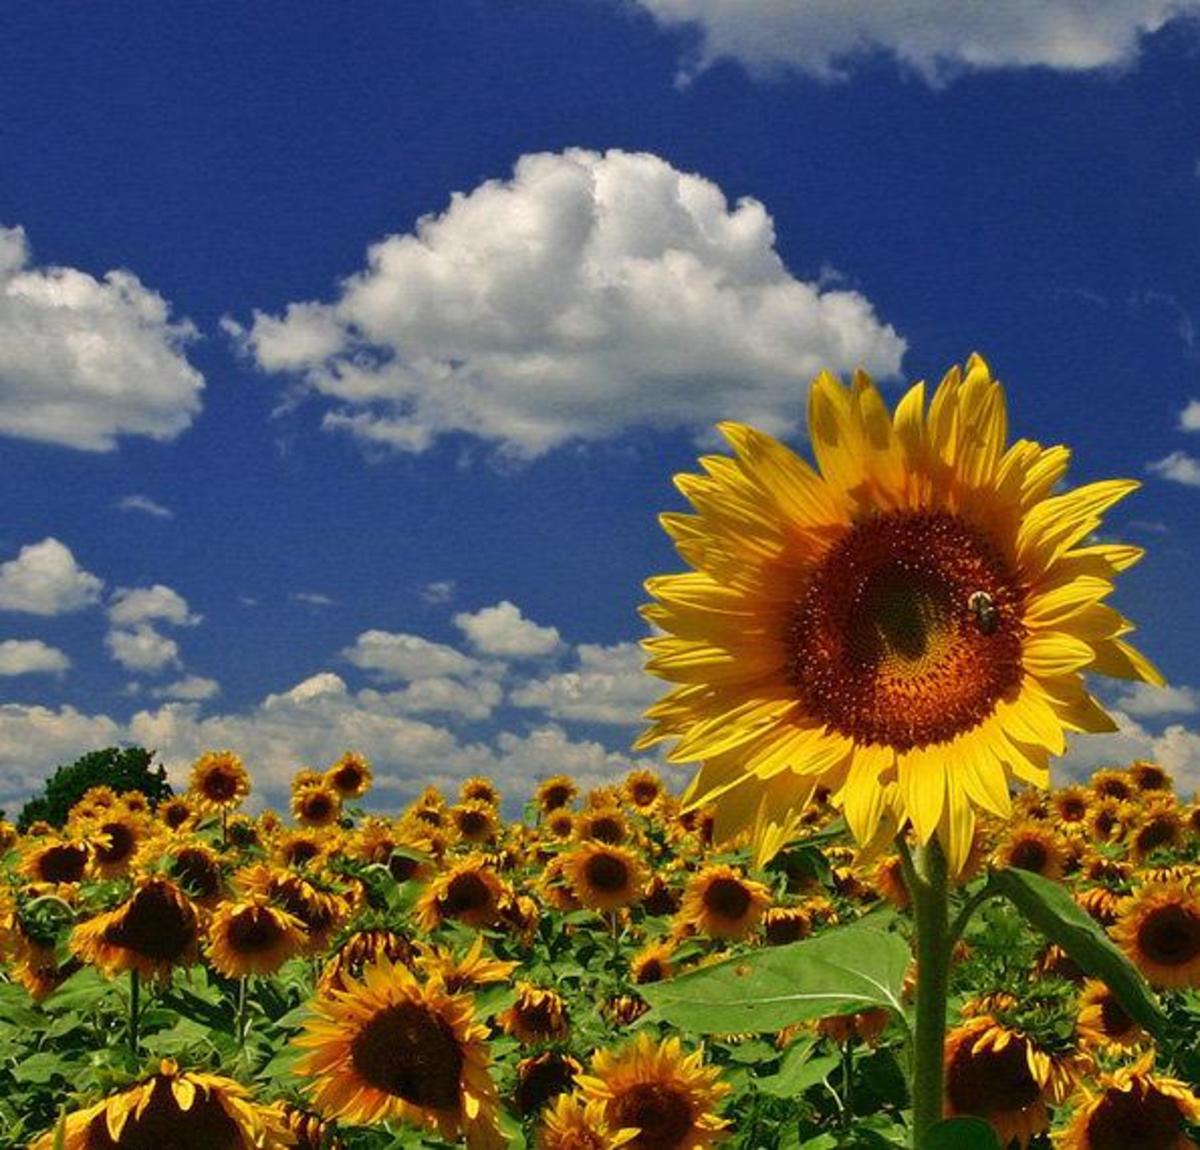 greek-mythology-and-poem-the-sunflower